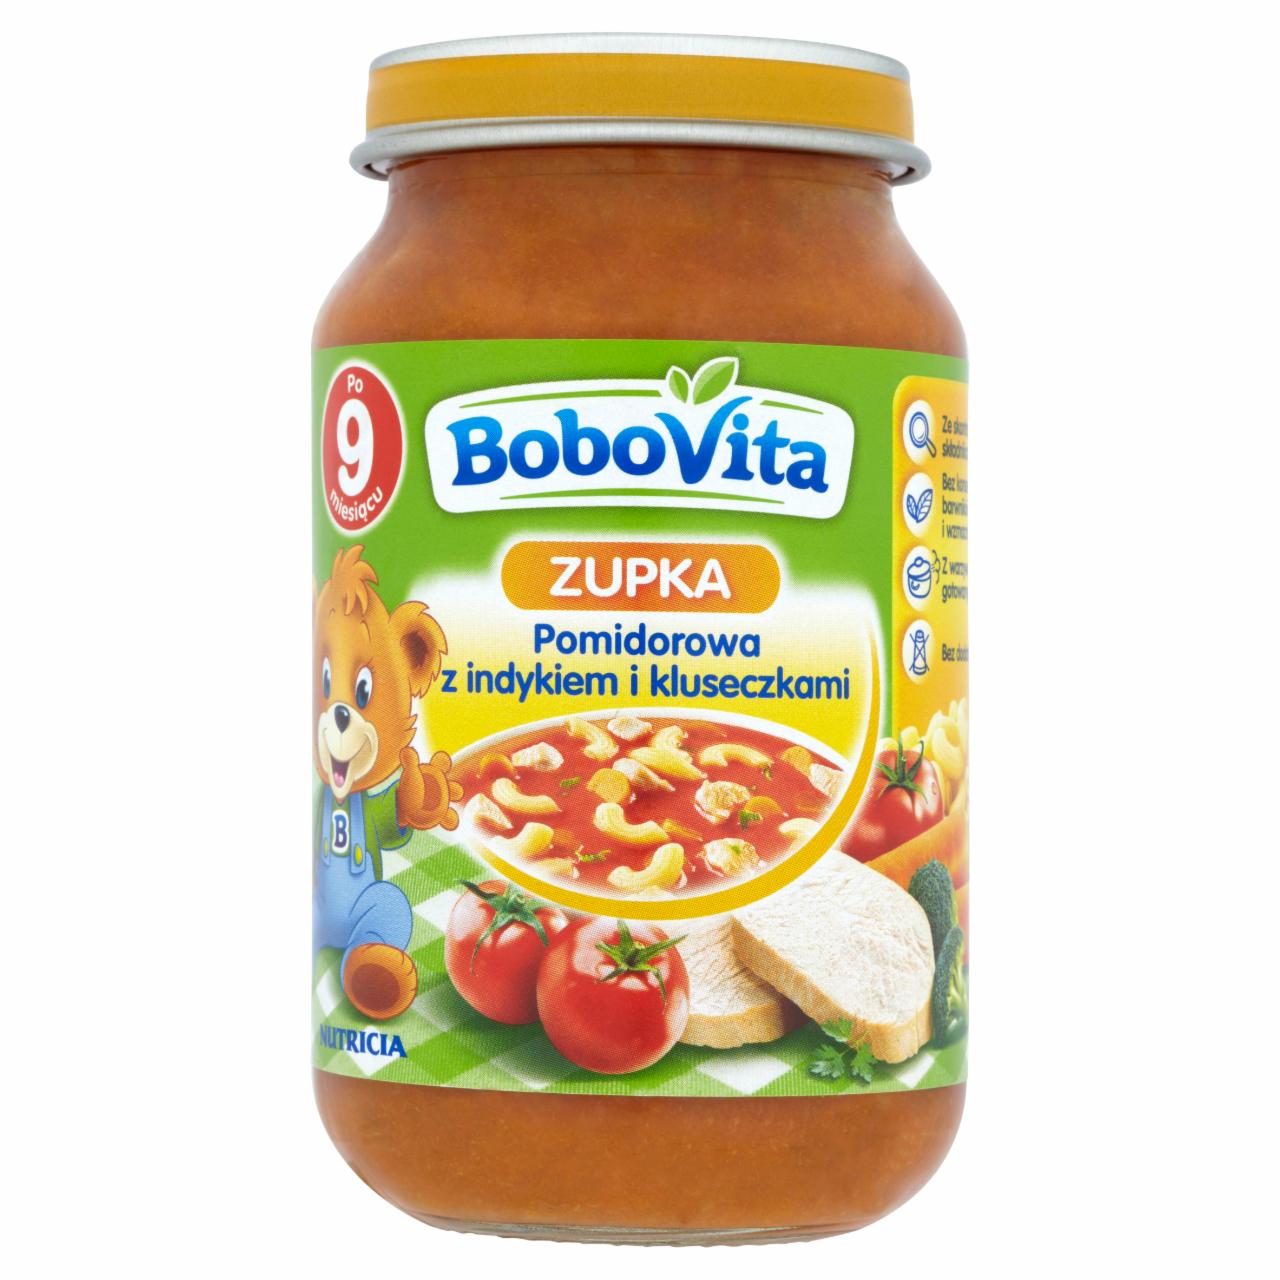 Zdjęcia - BoboVita Zupka Pomidorowa z indykiem i kluseczkami po 9 miesiącu 190 g